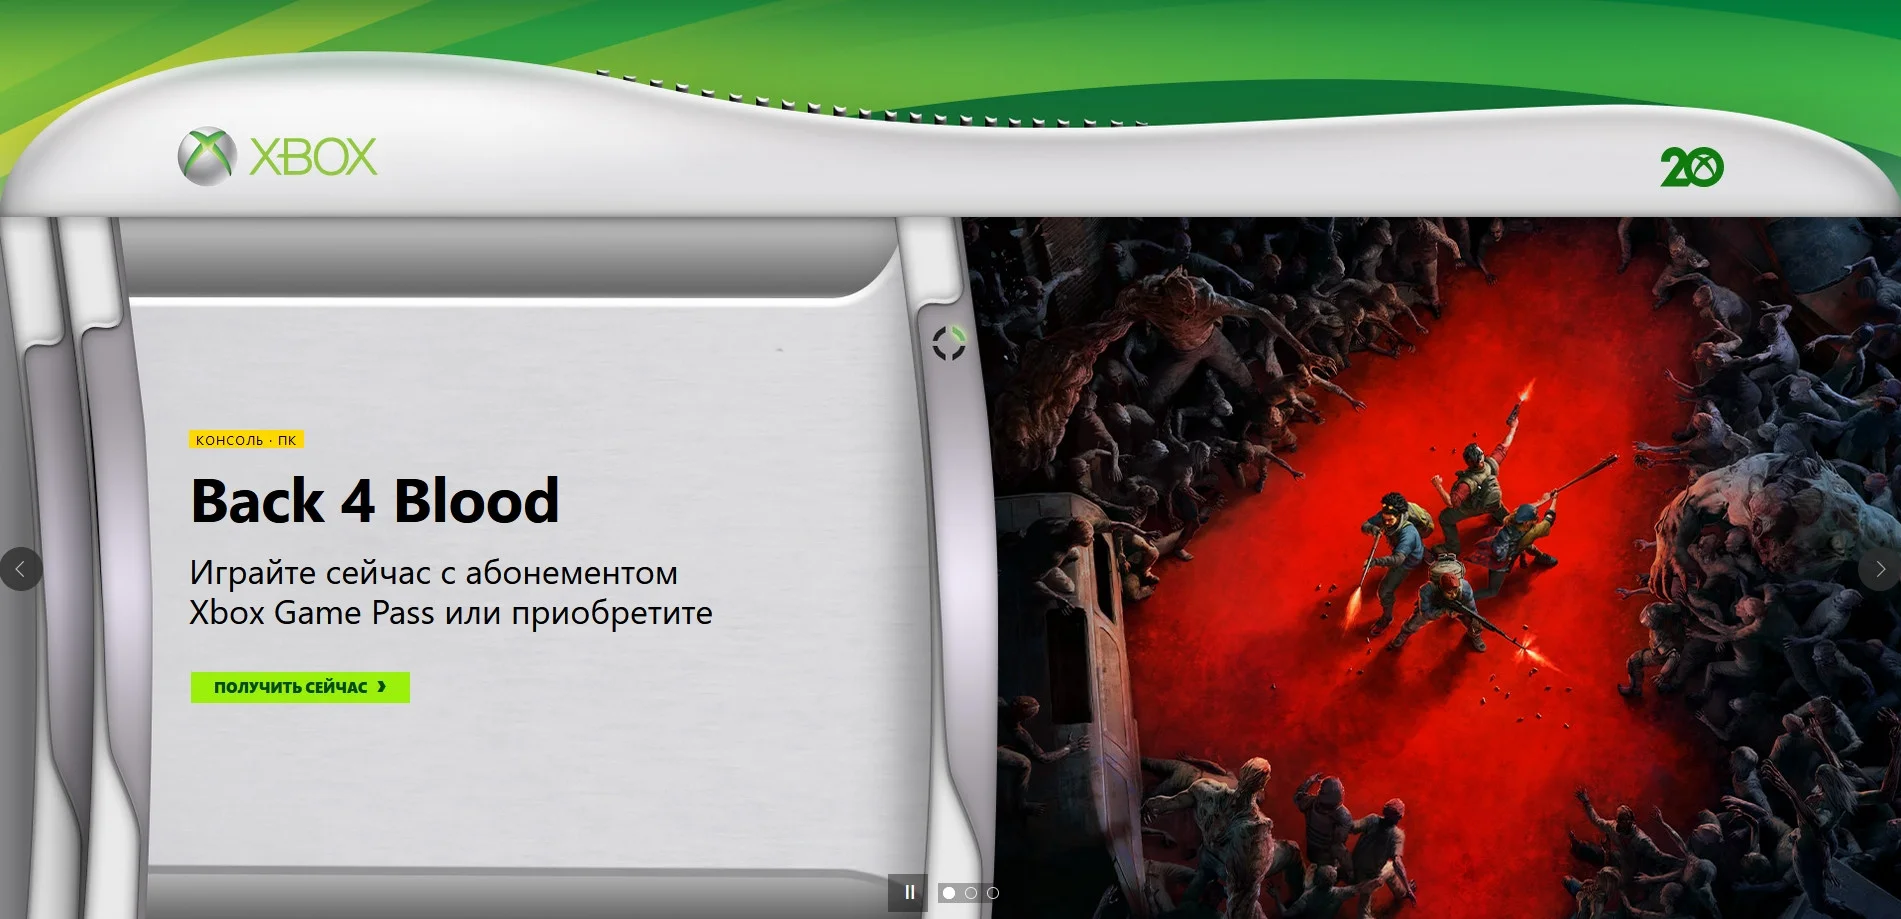 Официальный сайт Xbox сменил дизайн и стал похож на первый дашборд Xbox 360 - фото 1